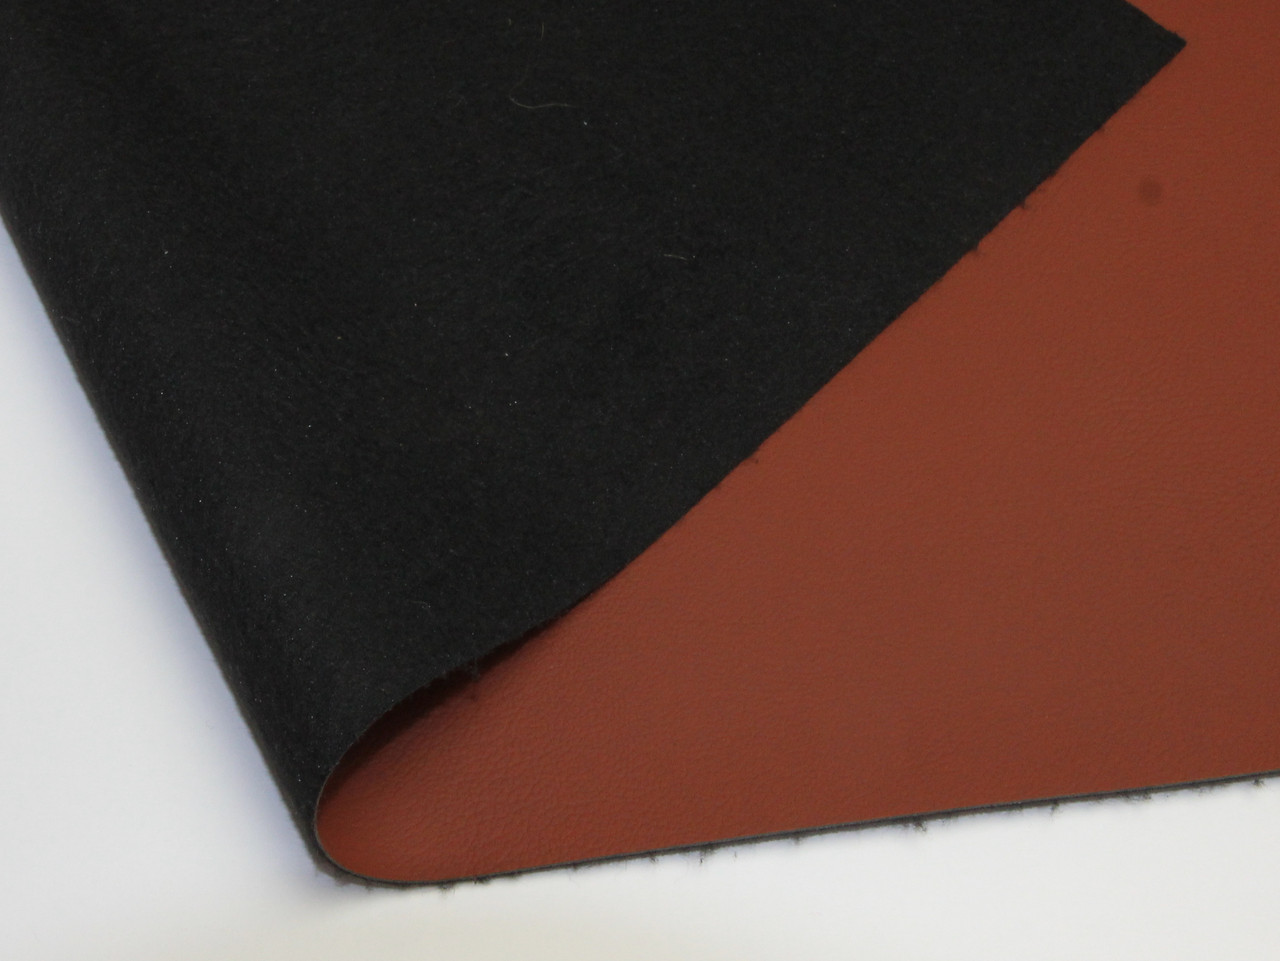 Биэластик тягучий медно-коричневый Maldive 600 для перетяжки дверных карт, стоек, airbag и вставок, ширина 1.40м детальная фотка